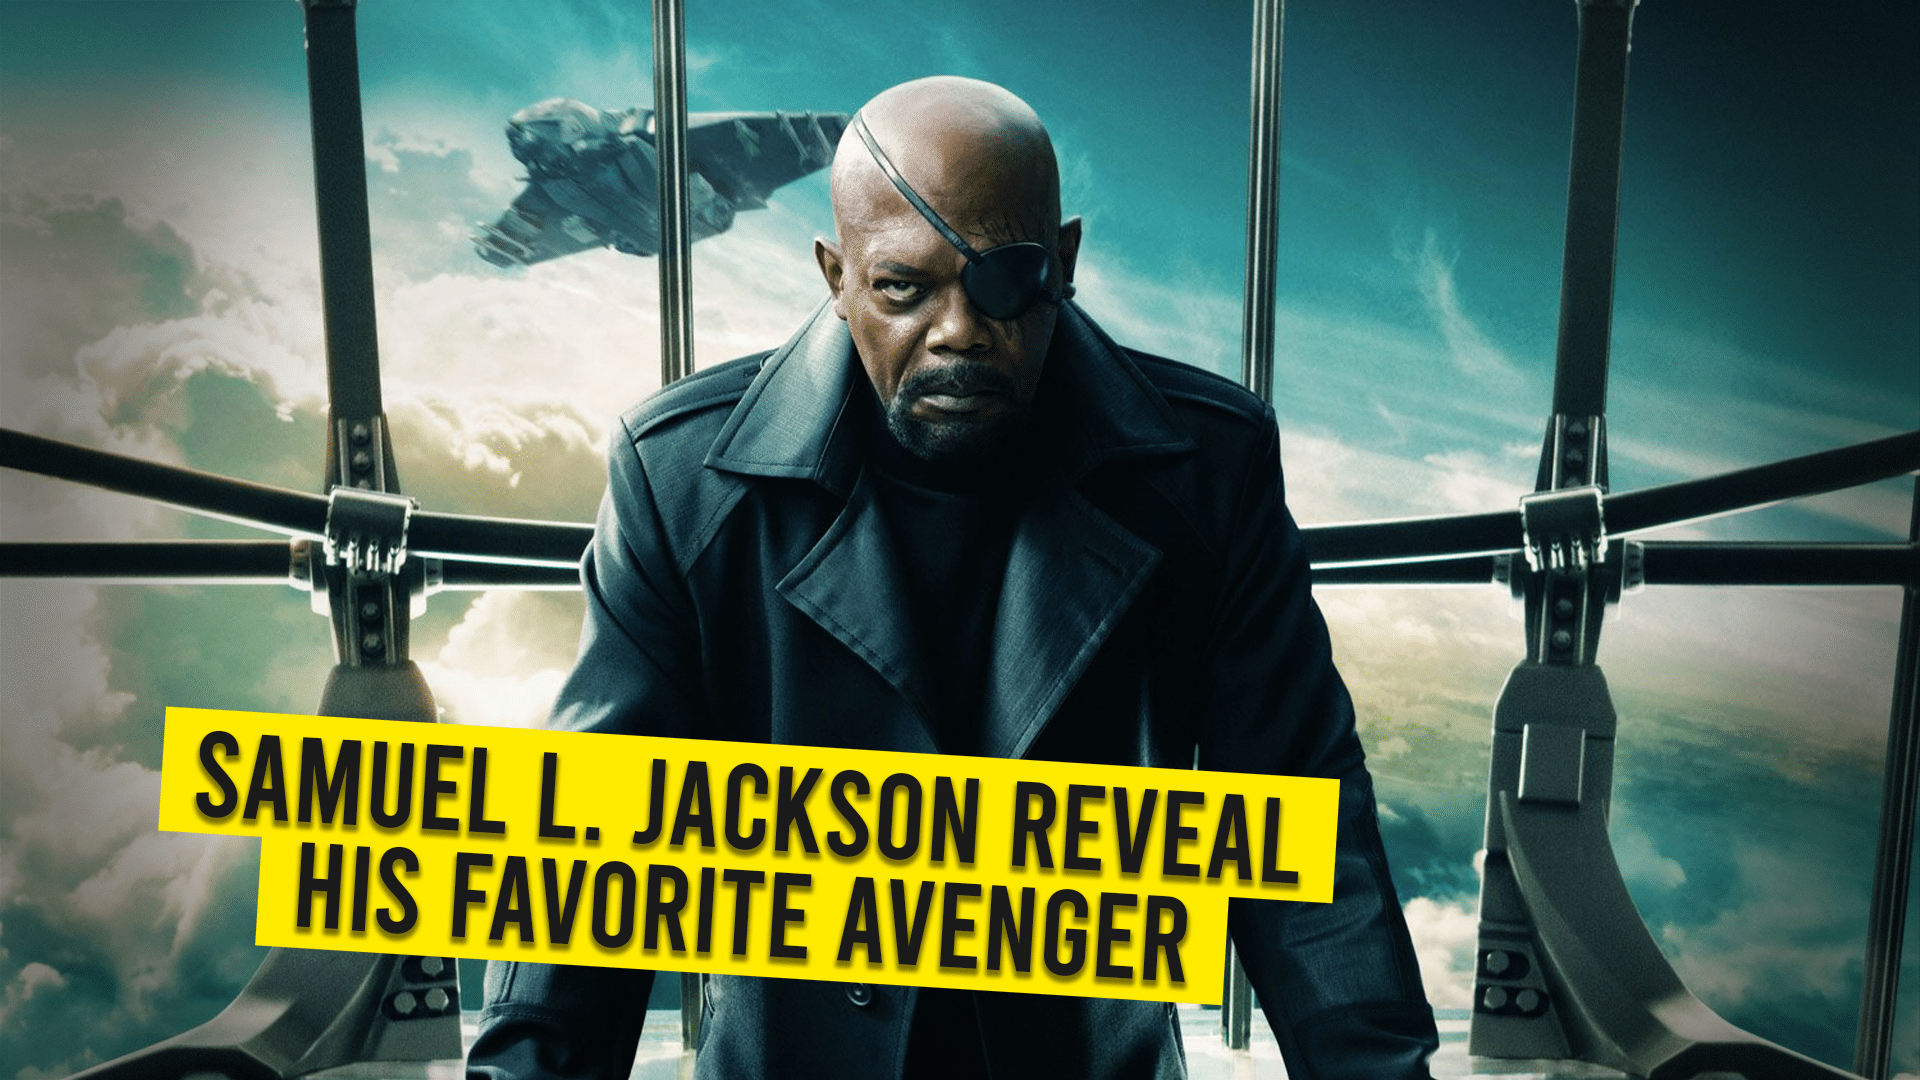 08 Samuel L. Jackson Reveal His Favorite Avenger 1